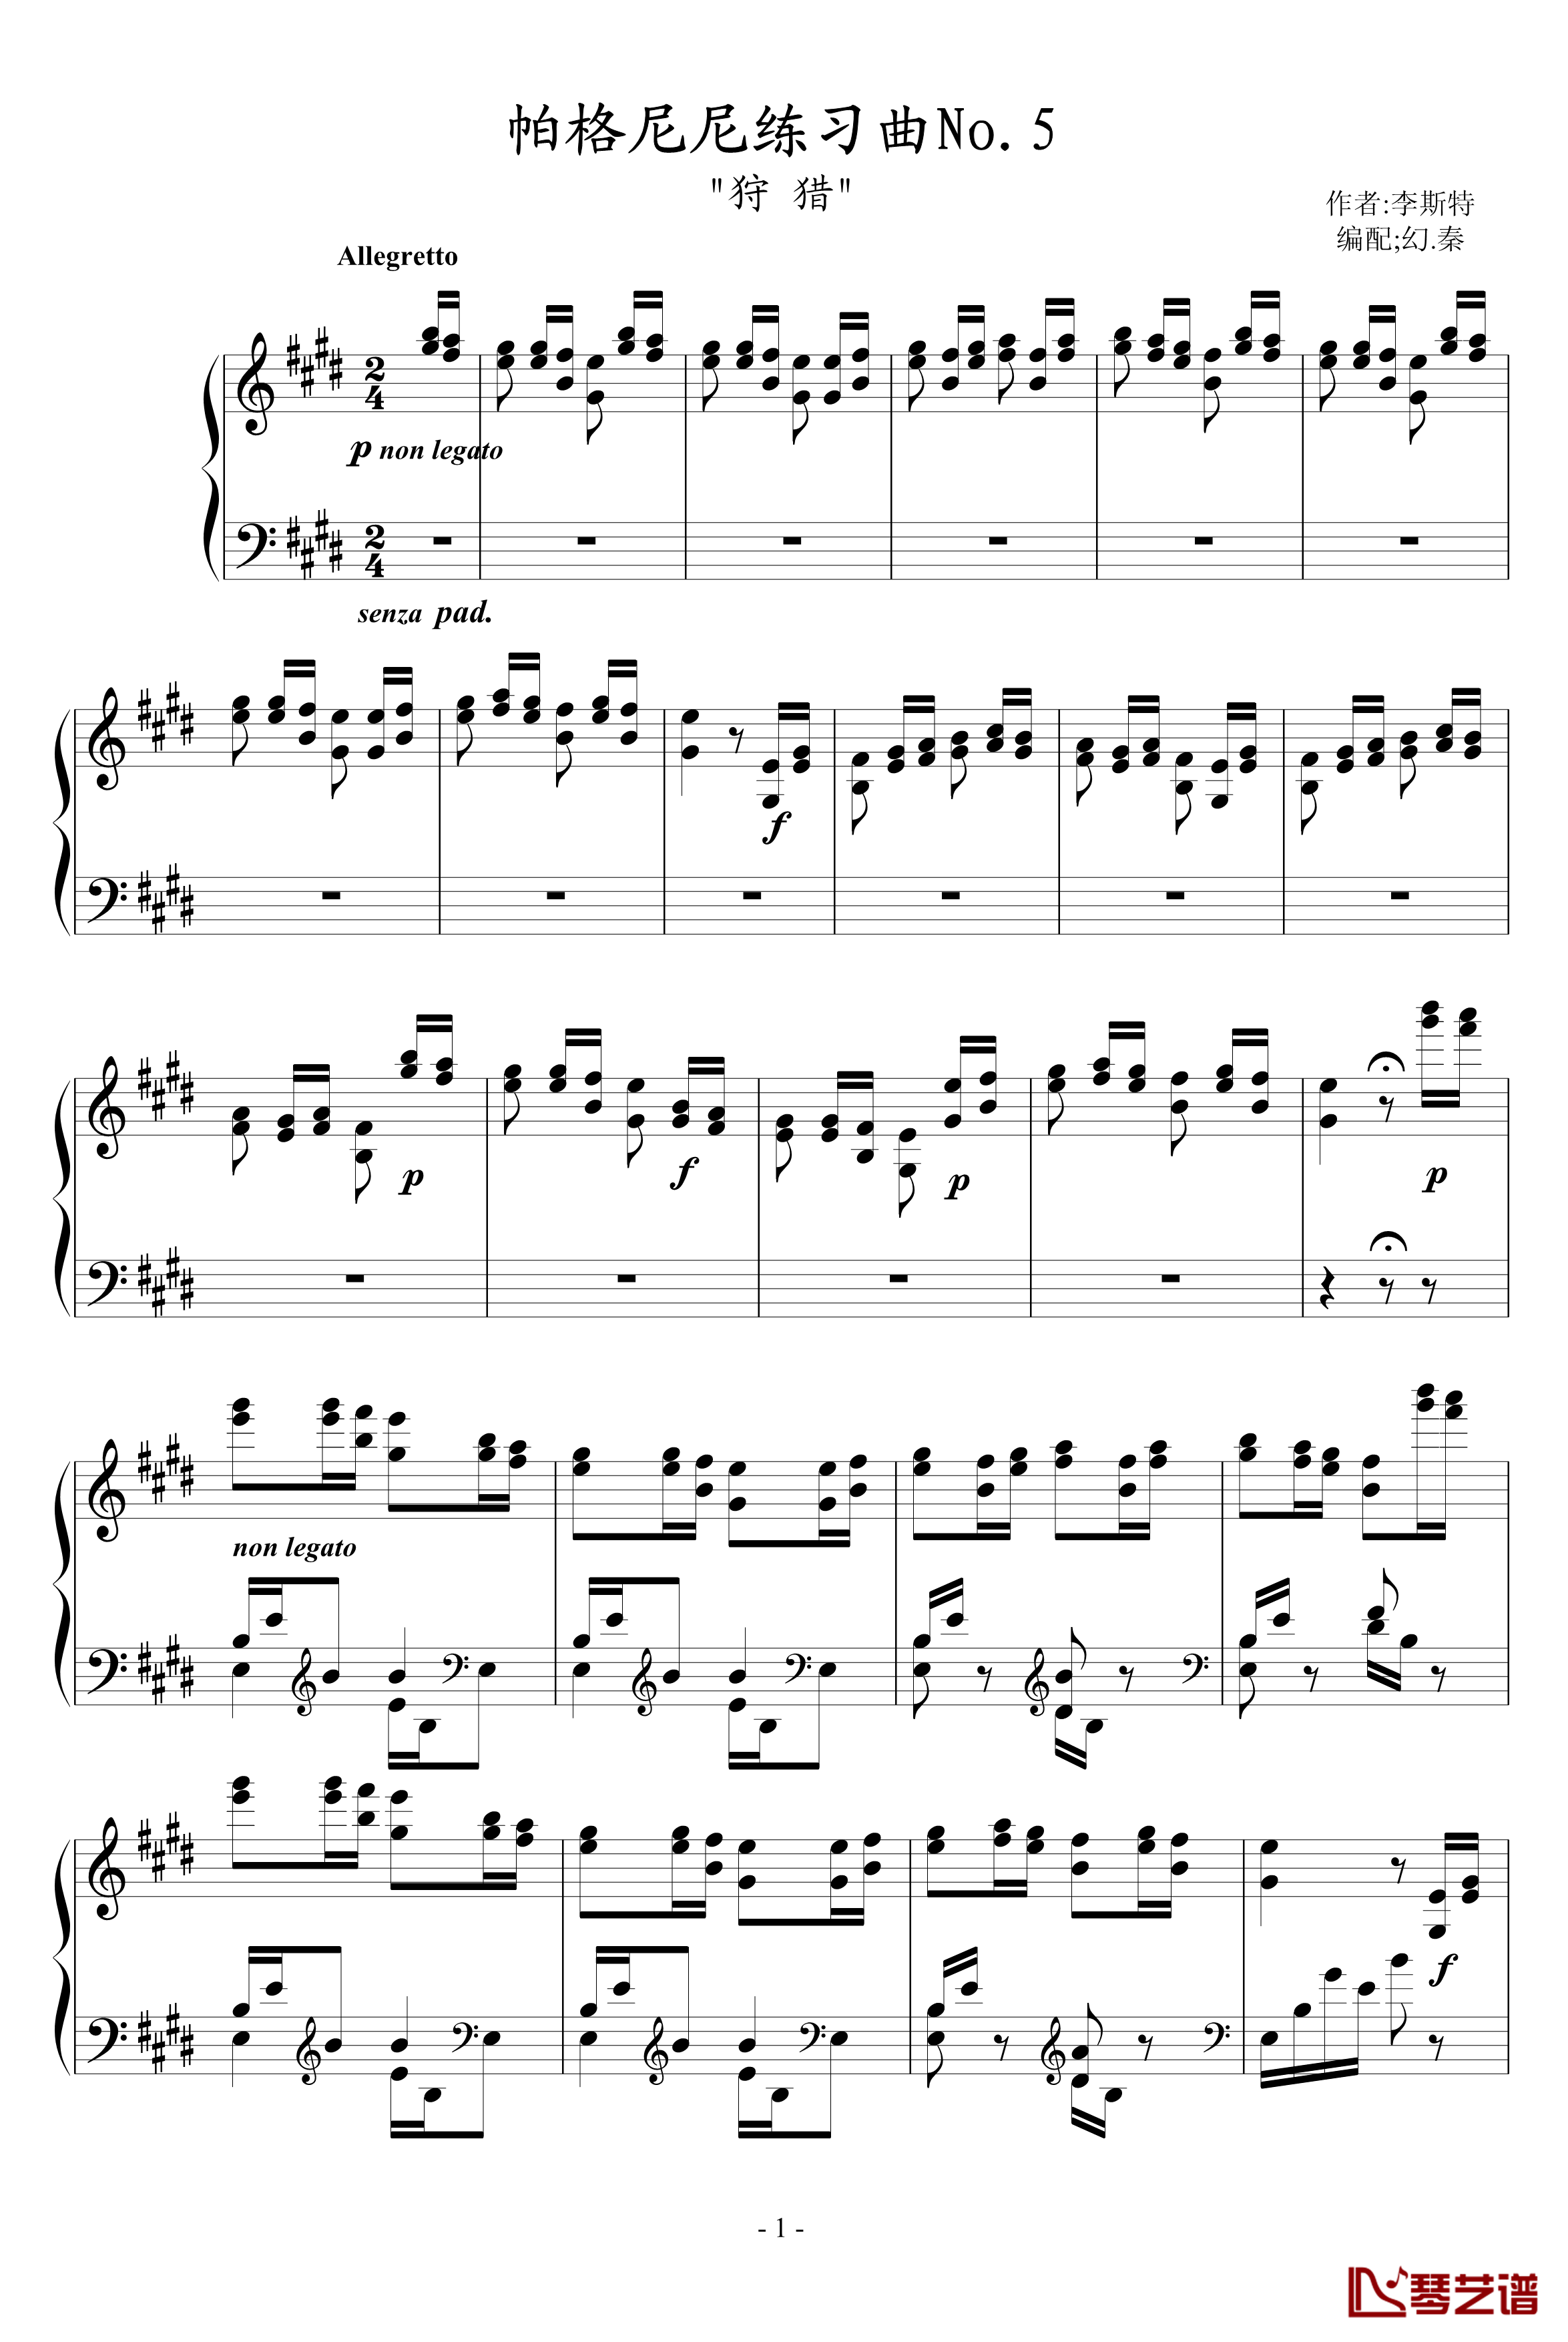 帕格尼尼练习曲5钢琴谱-李斯特1